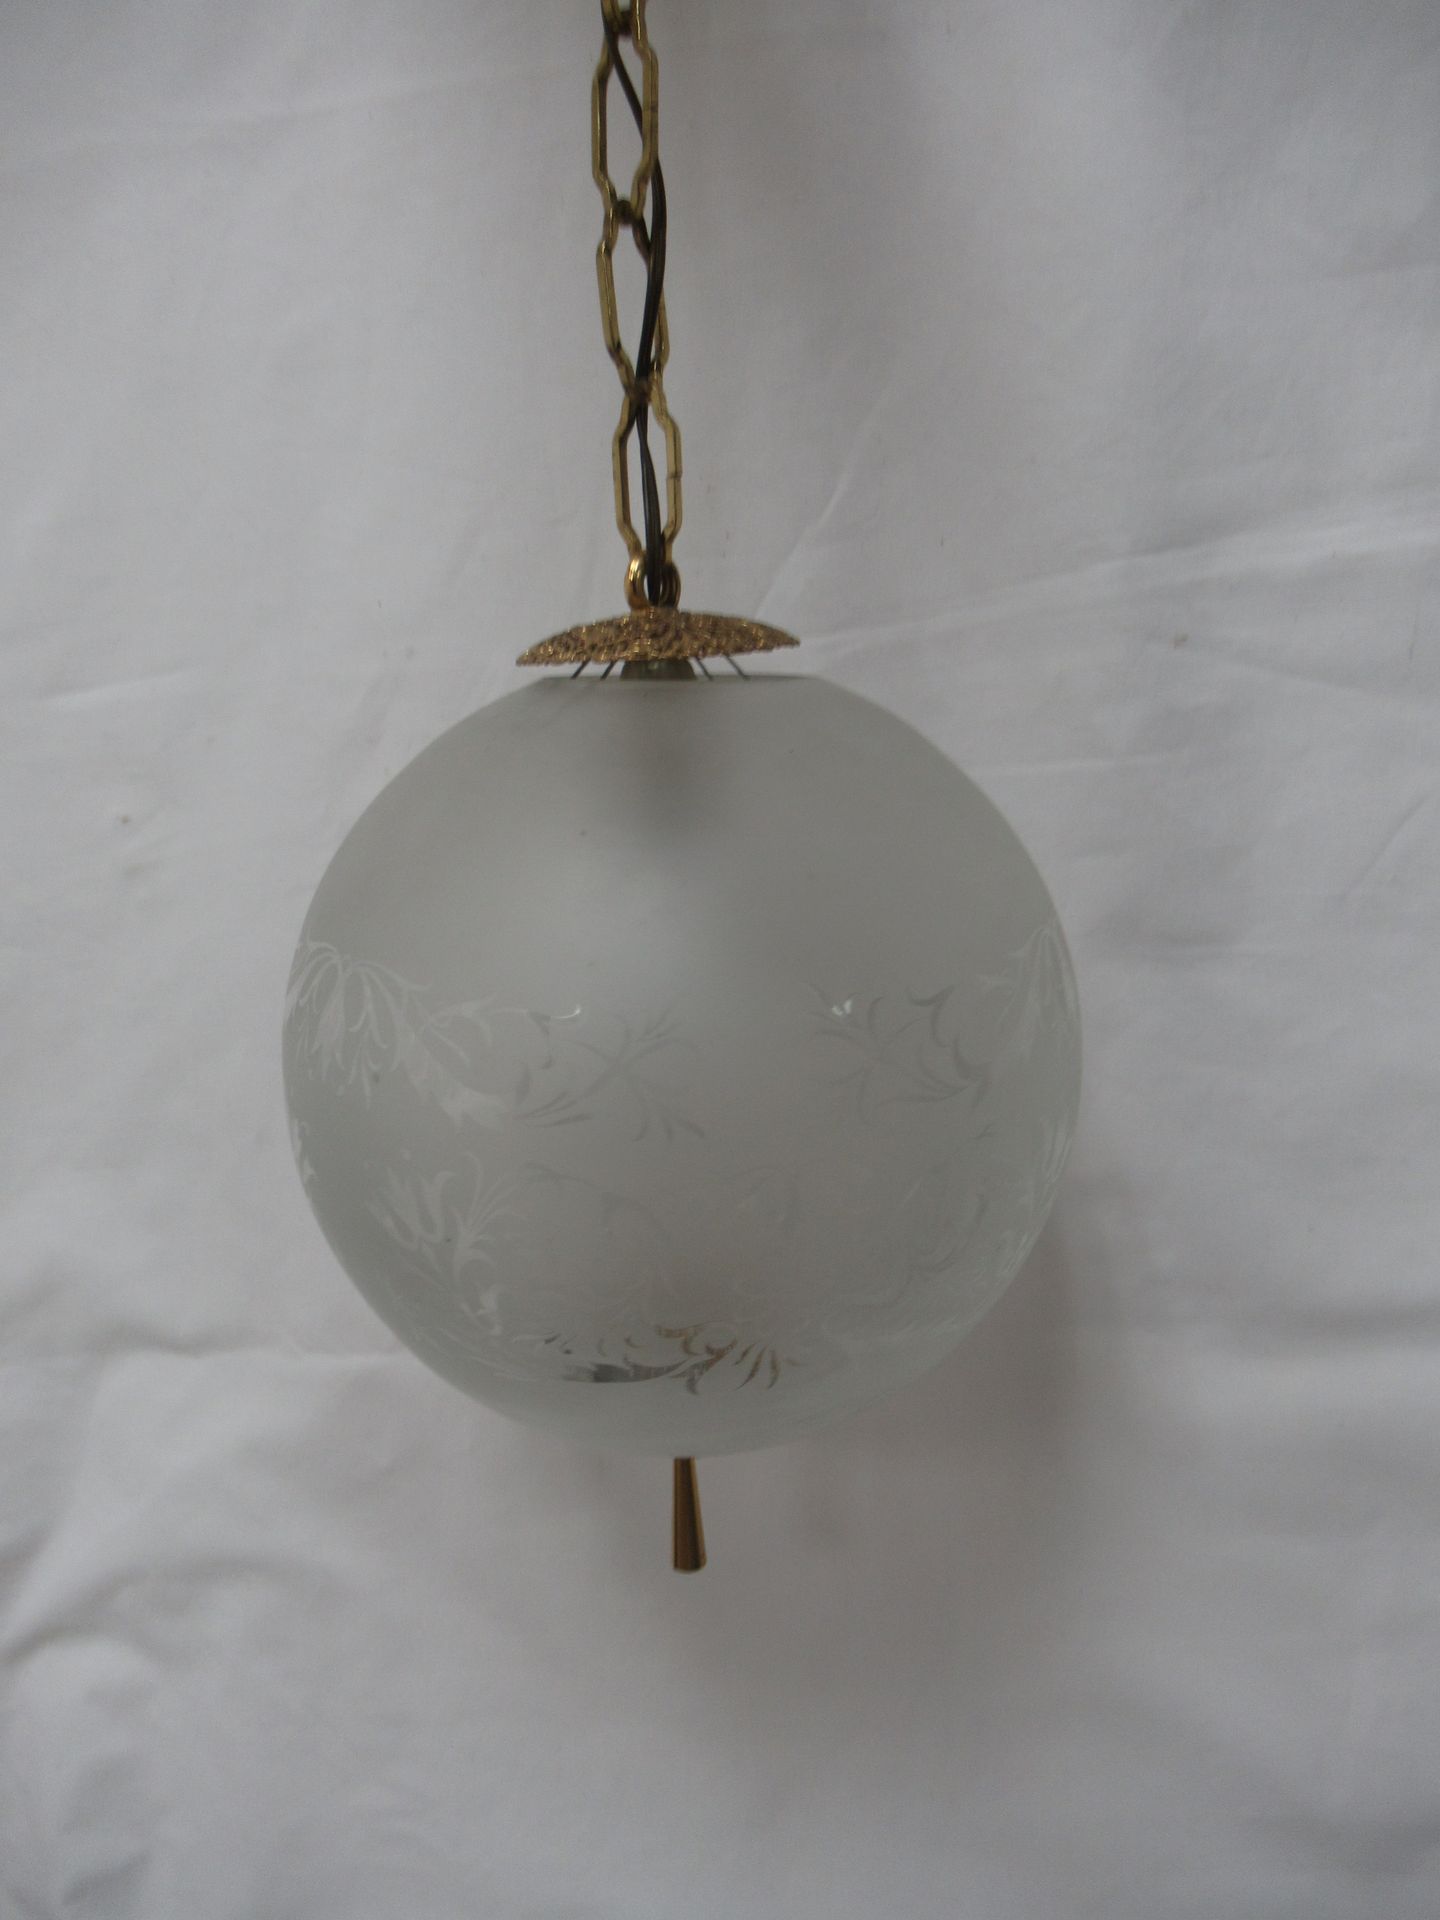 Null 黄铜和磨砂玻璃制成的吊灯。直径24厘米。